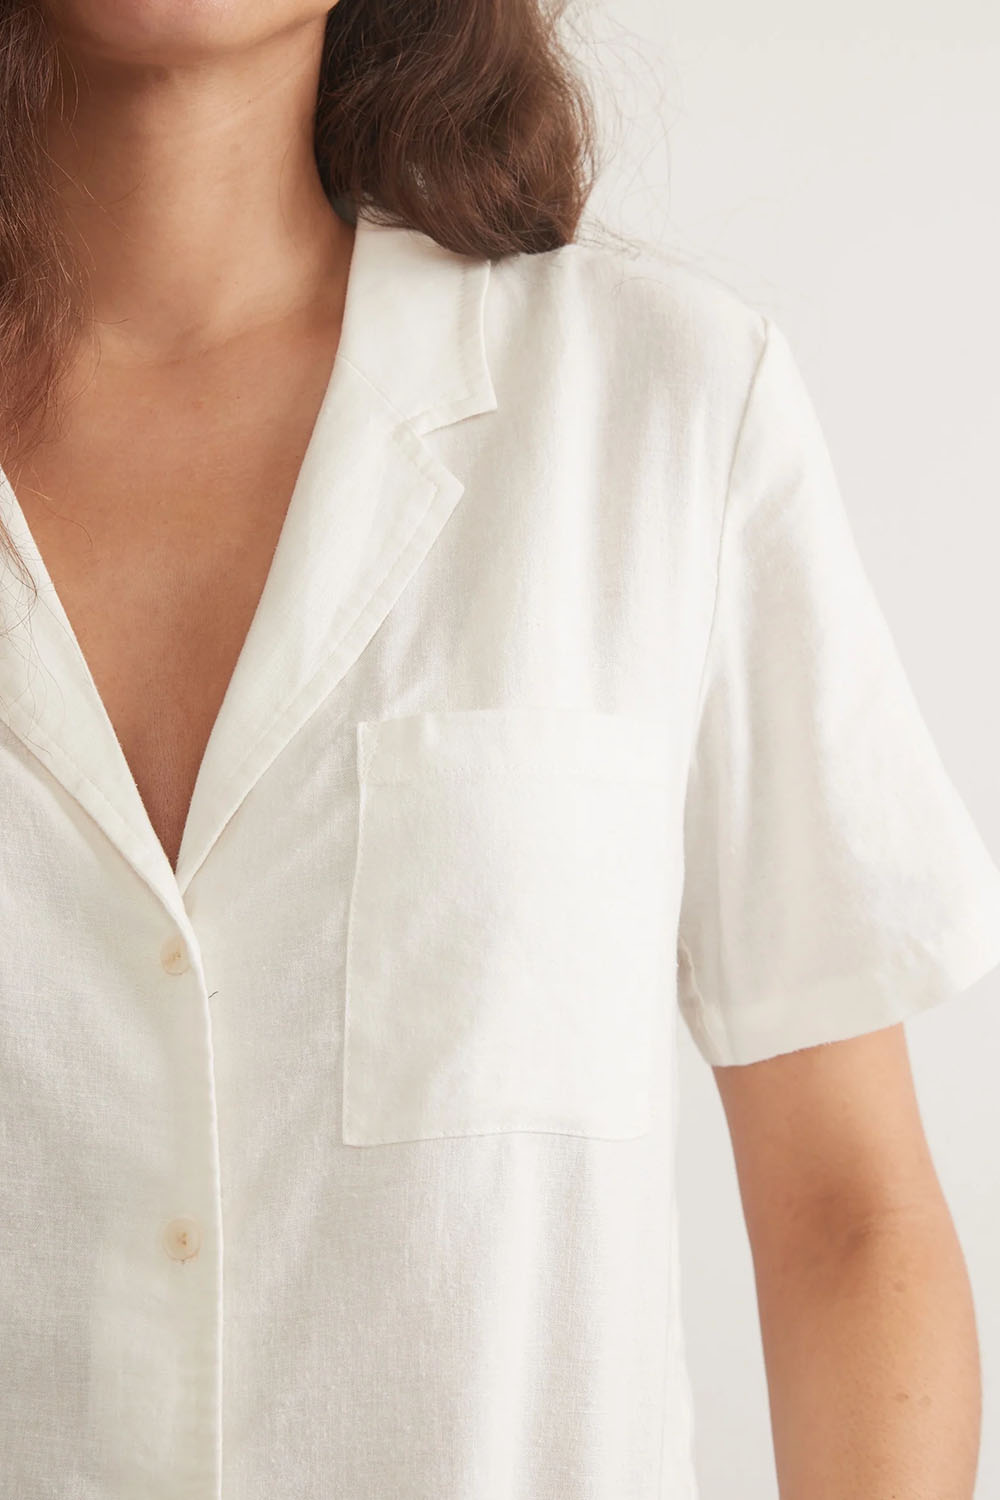 Marine Layer - Lucy Resort Shirt - White - Detail